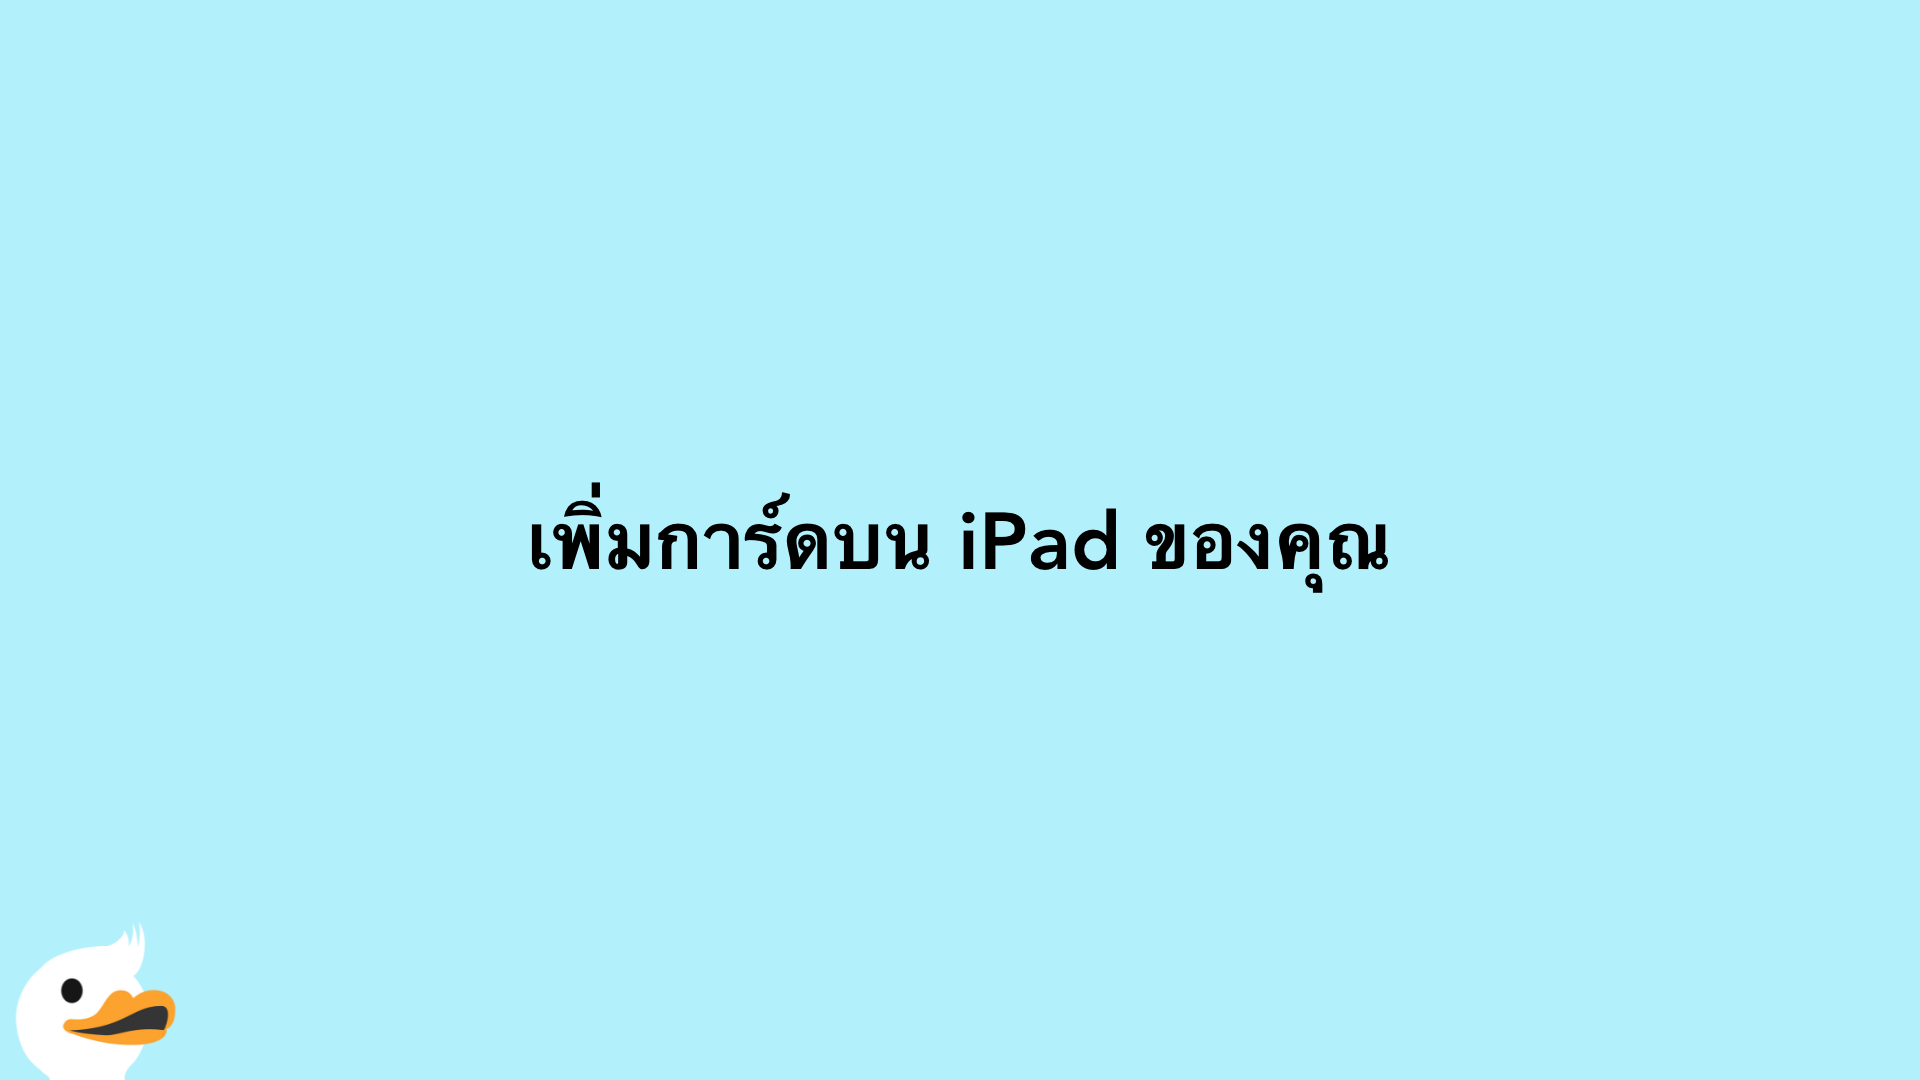 เพิ่มการ์ดบน iPad ของคุณ